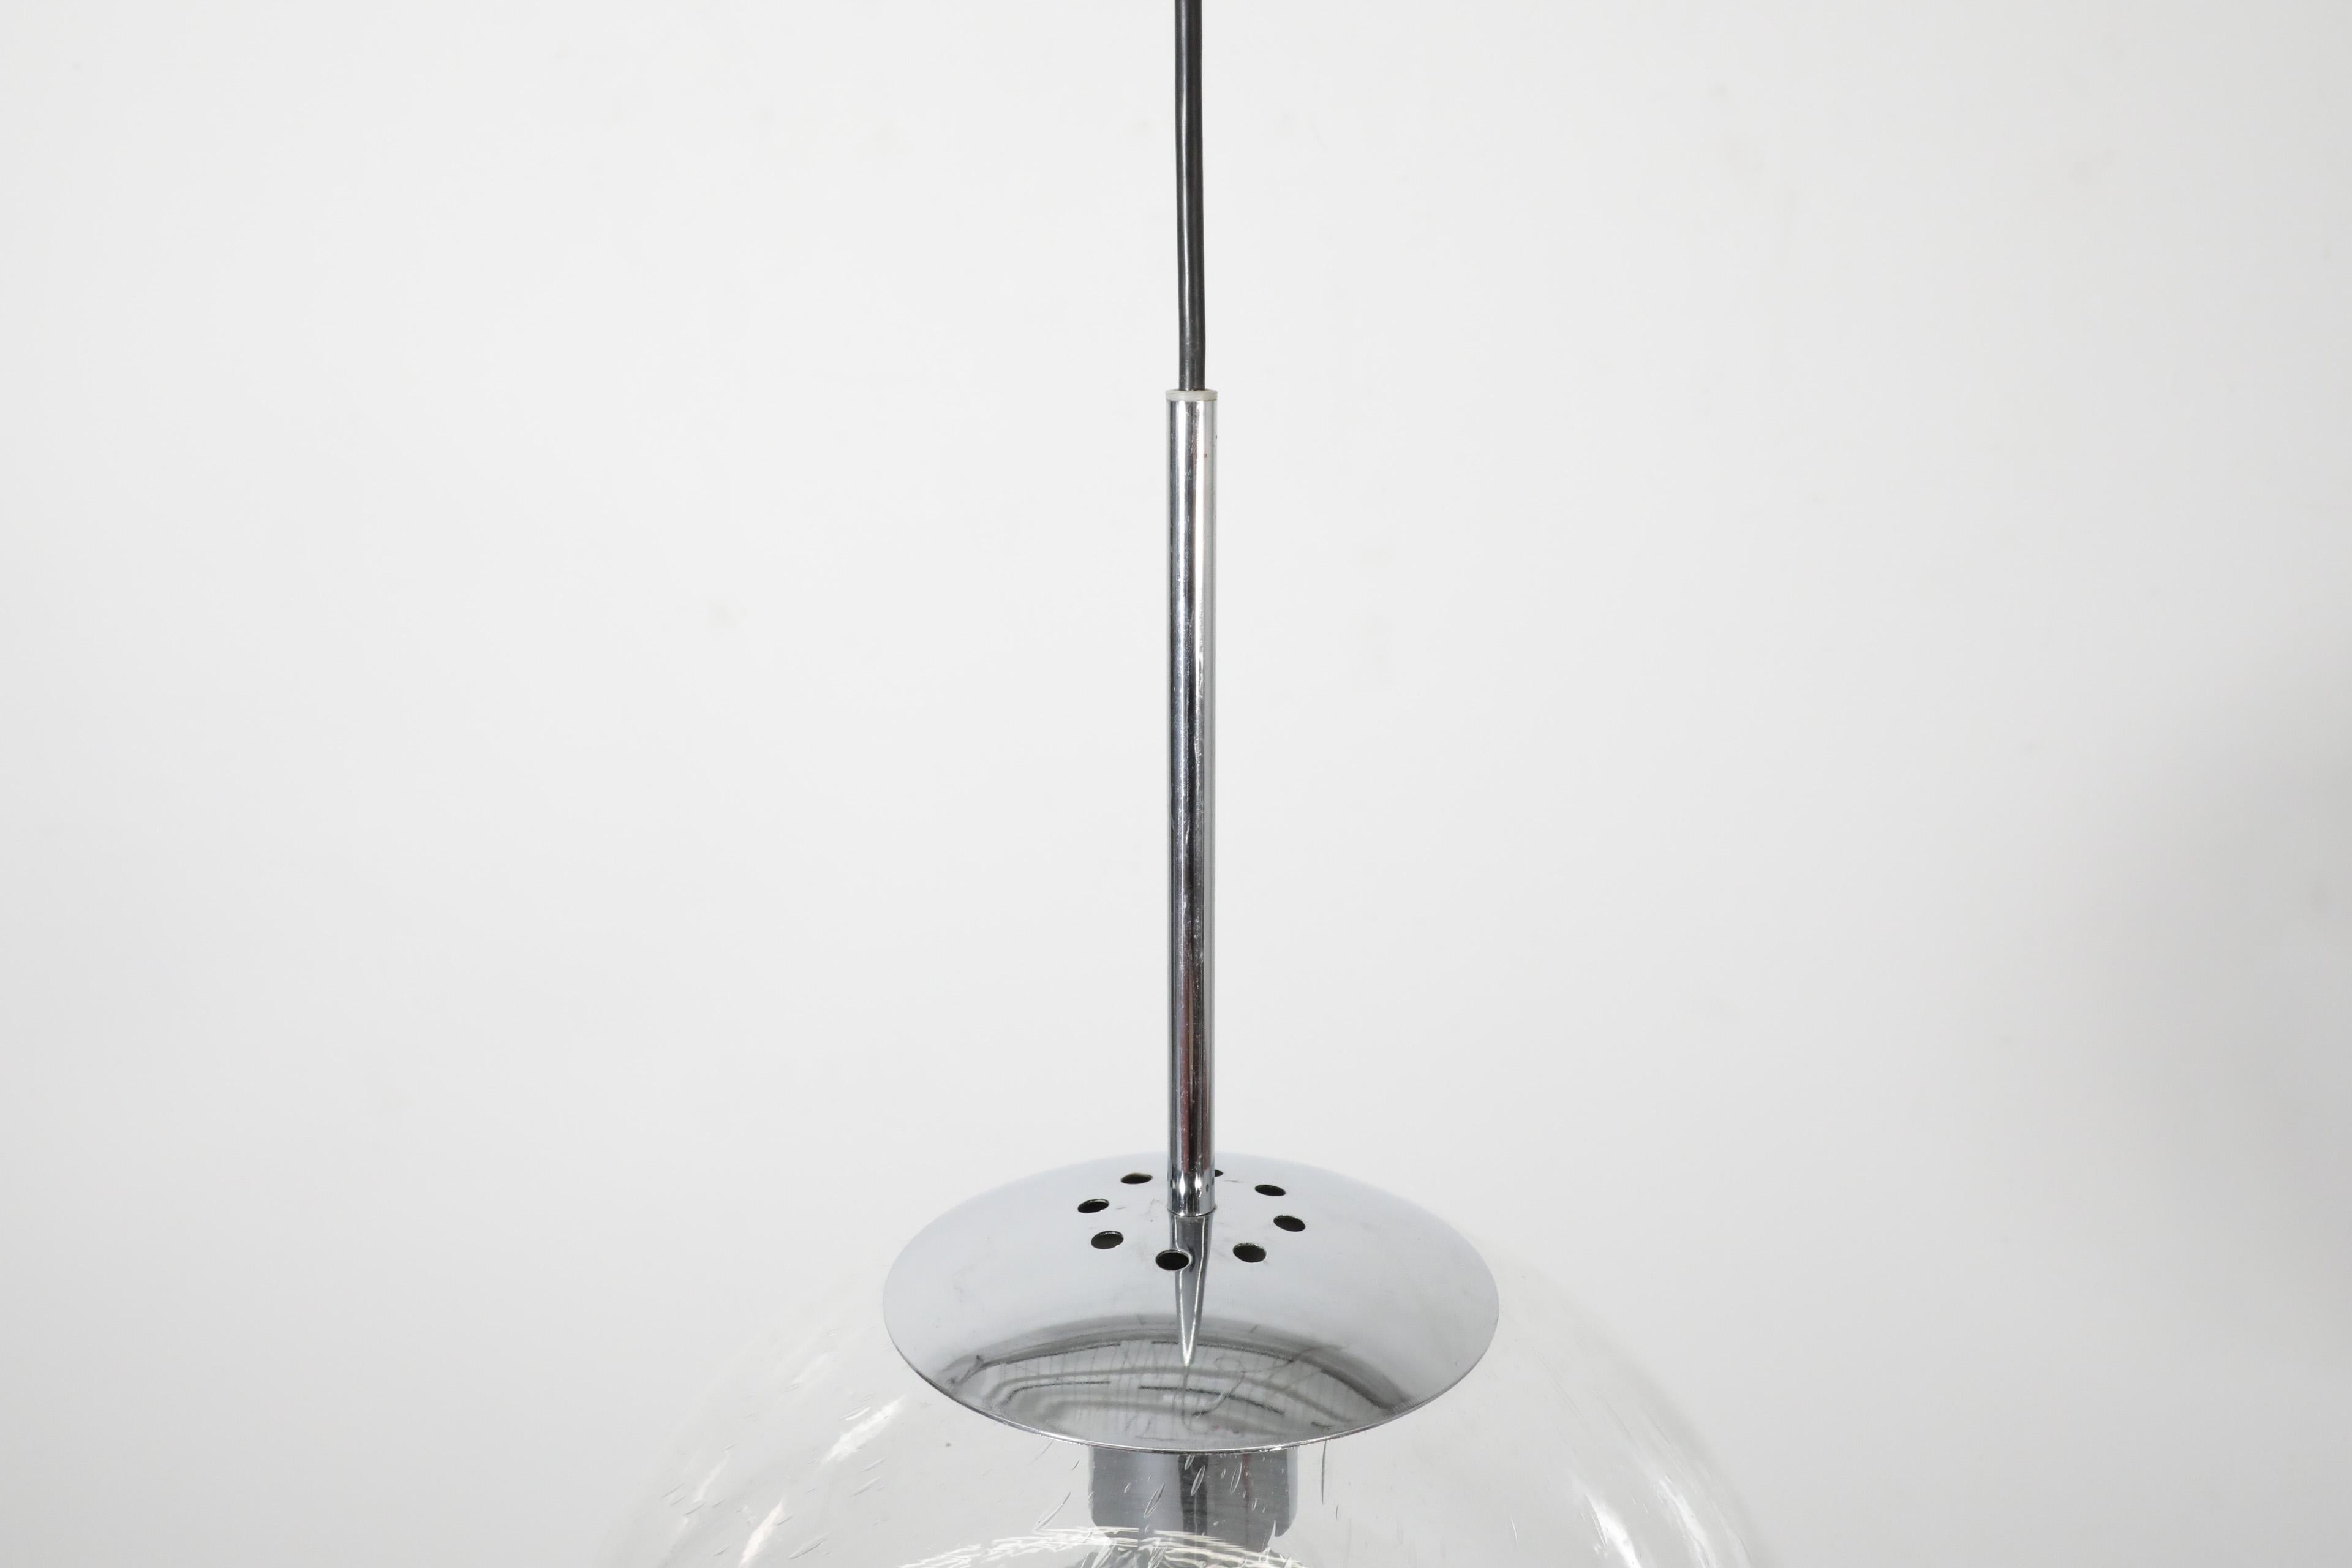 Ce grand plafonnier globe en verre soufflé du milieu du siècle, avec des ferrures chromées, a été fabriqué par le fabricant de luminaires néerlandais avant-gardiste RAAK.  Elle est ornée d'une bulle décorative en verre et d'une belle quincaillerie